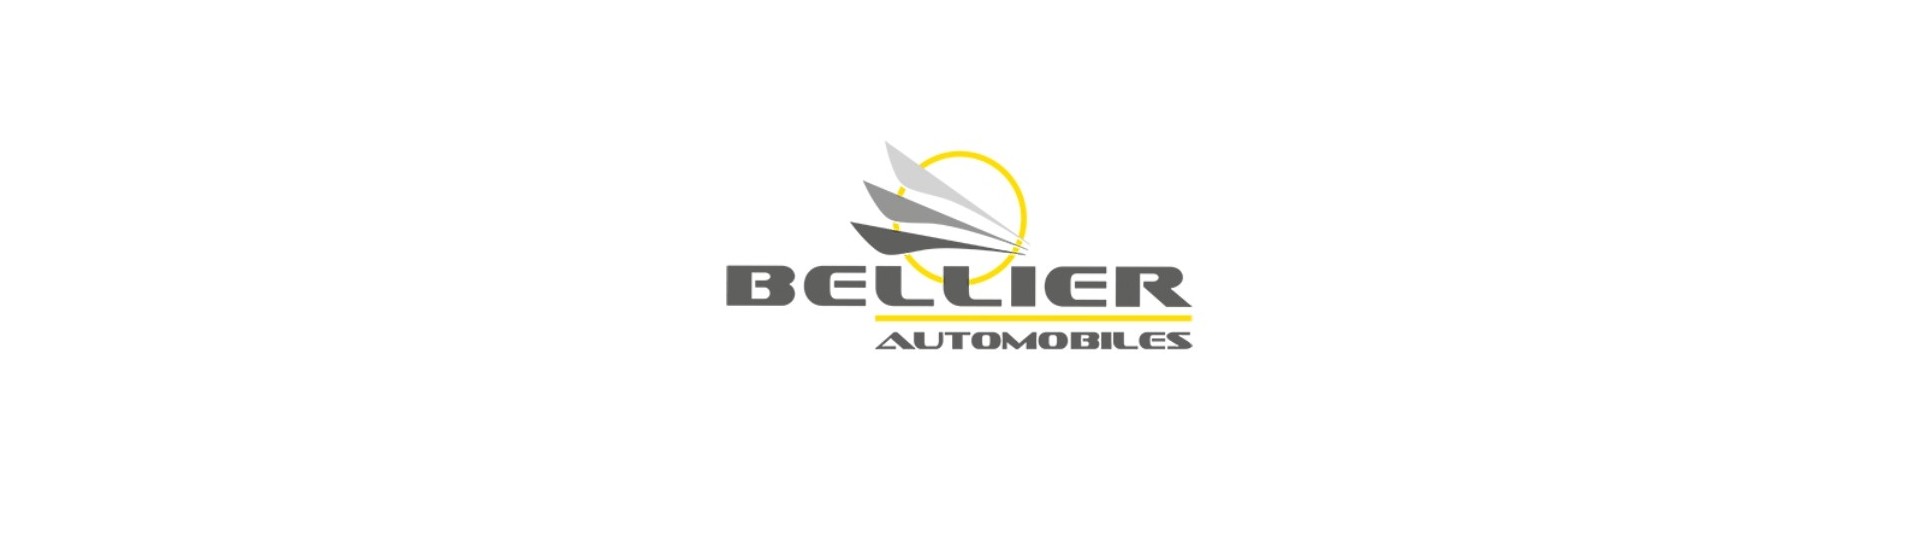 Paras hinnastokaapeli autoon ilman lupaa Bellier